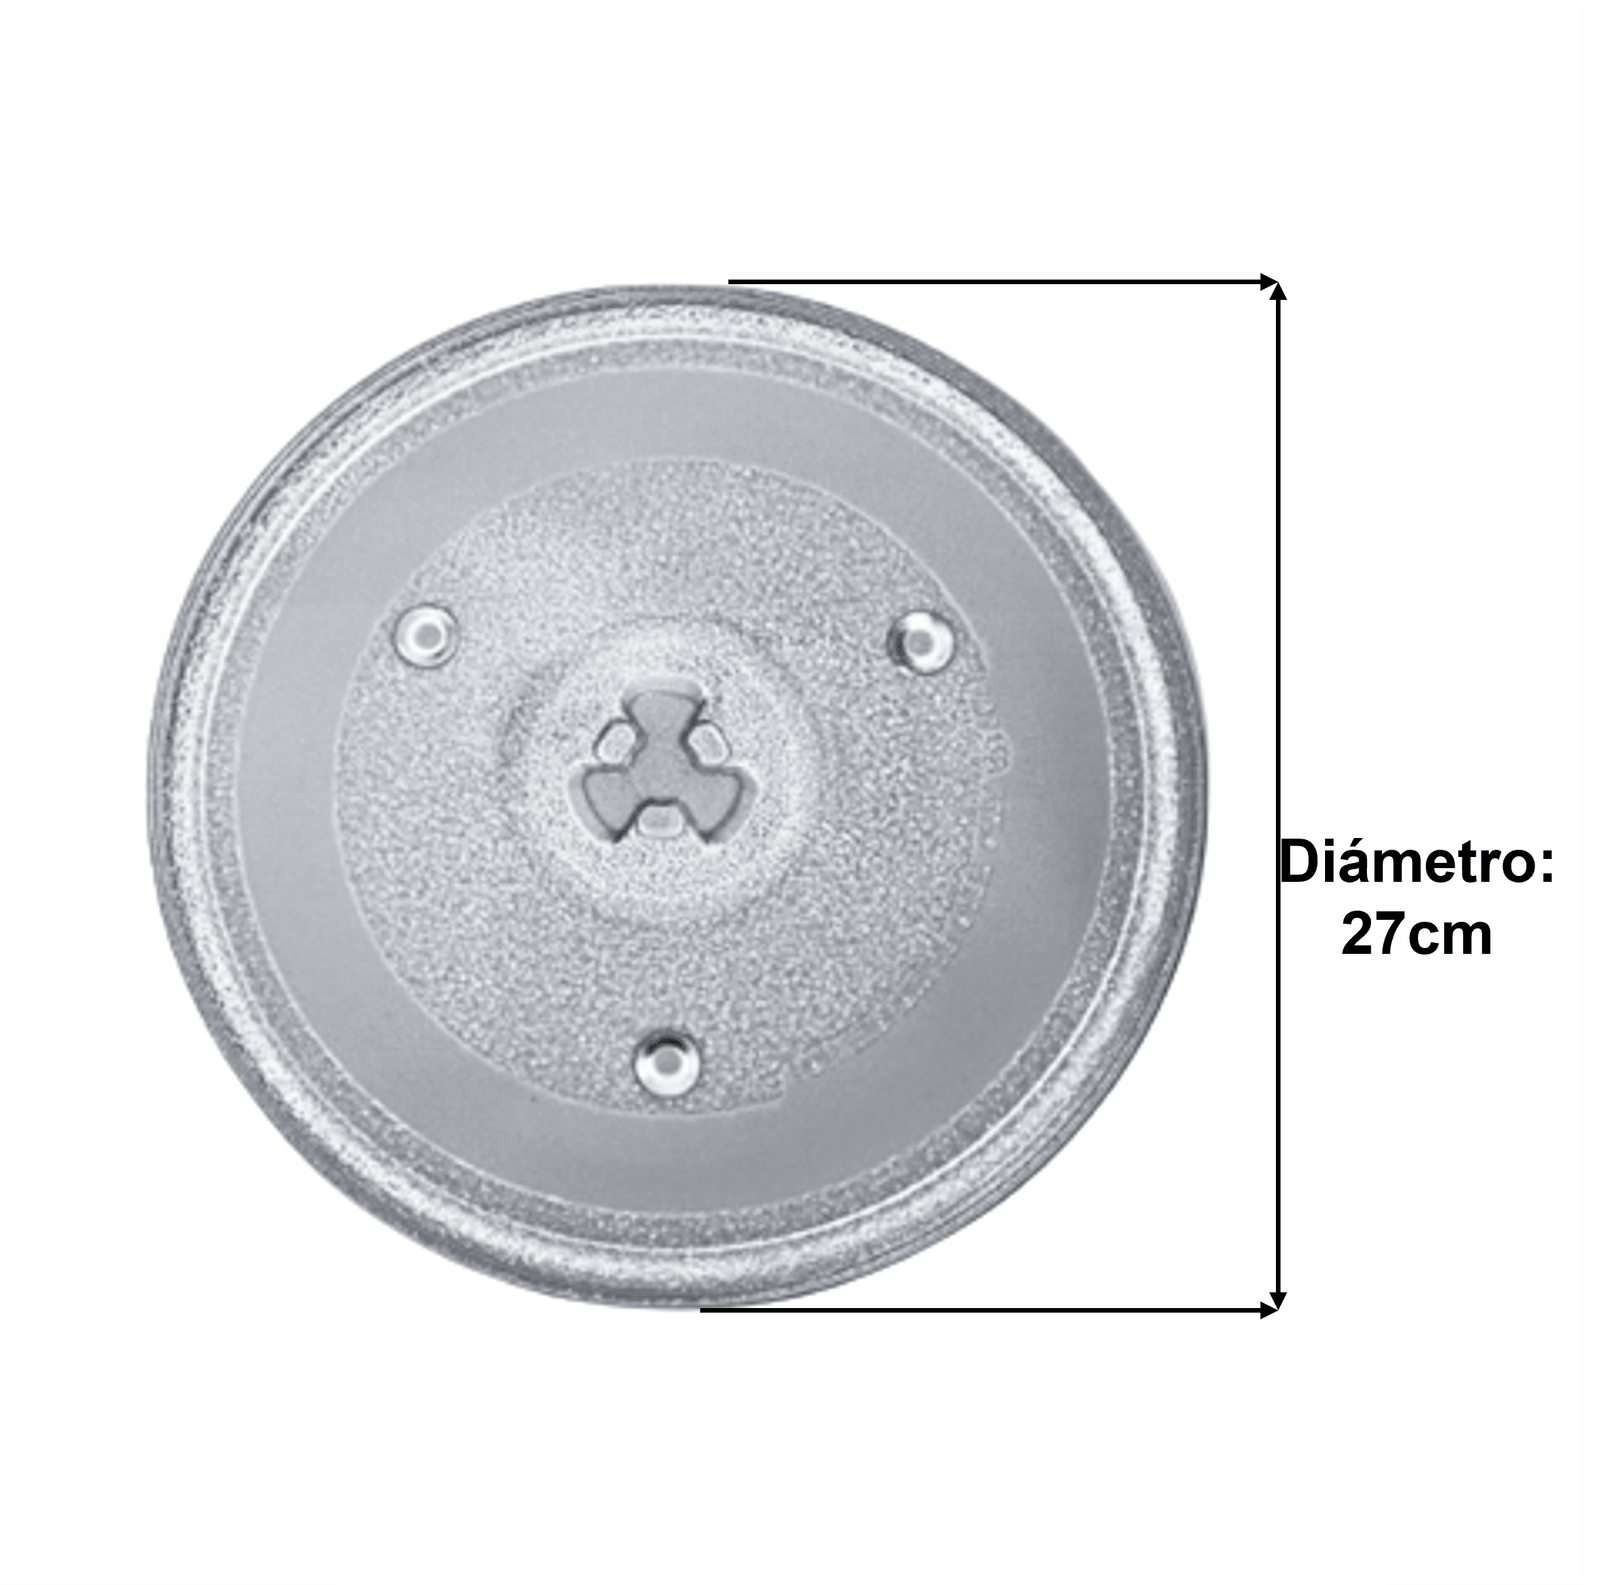 Plato microondas 32cm diametro eje trebol